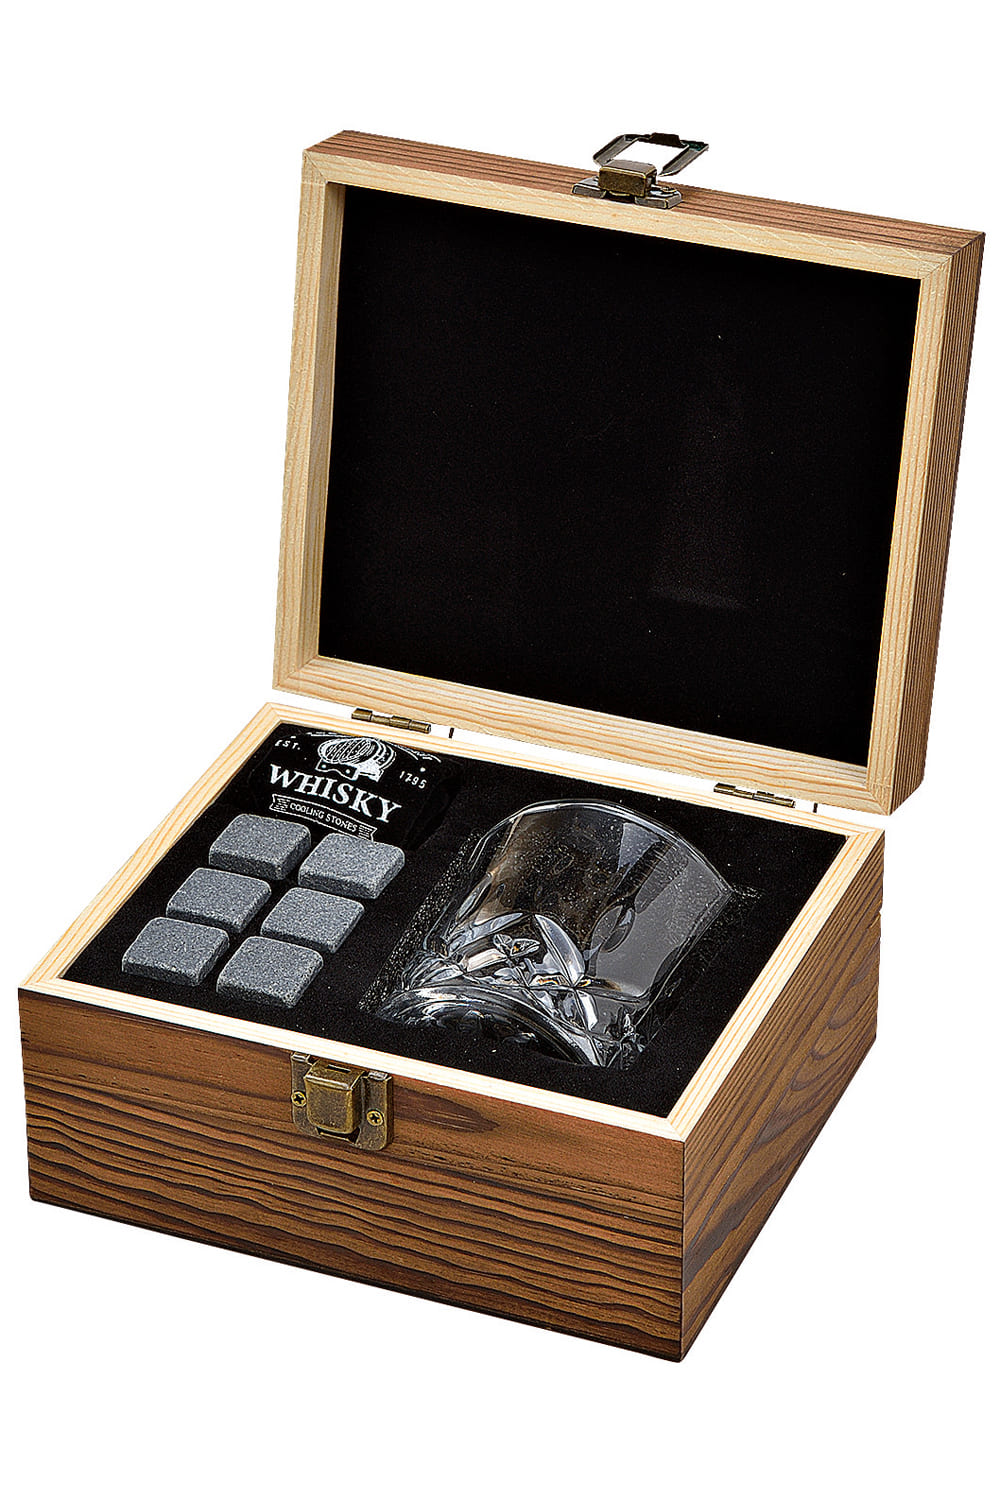 Dieses Whisky Geschenkset ist das perfekte Geschenk für alle Whisky Liebhaber und Whisky Geniesser.   Das Whisky Set besteht aus sechs Würfel aus Basalt Stein mit einem Samtbeutel und einem Whiskyglas. Das Set ist in einer schönen Holzbox verpackt. Holzbox Geschenk